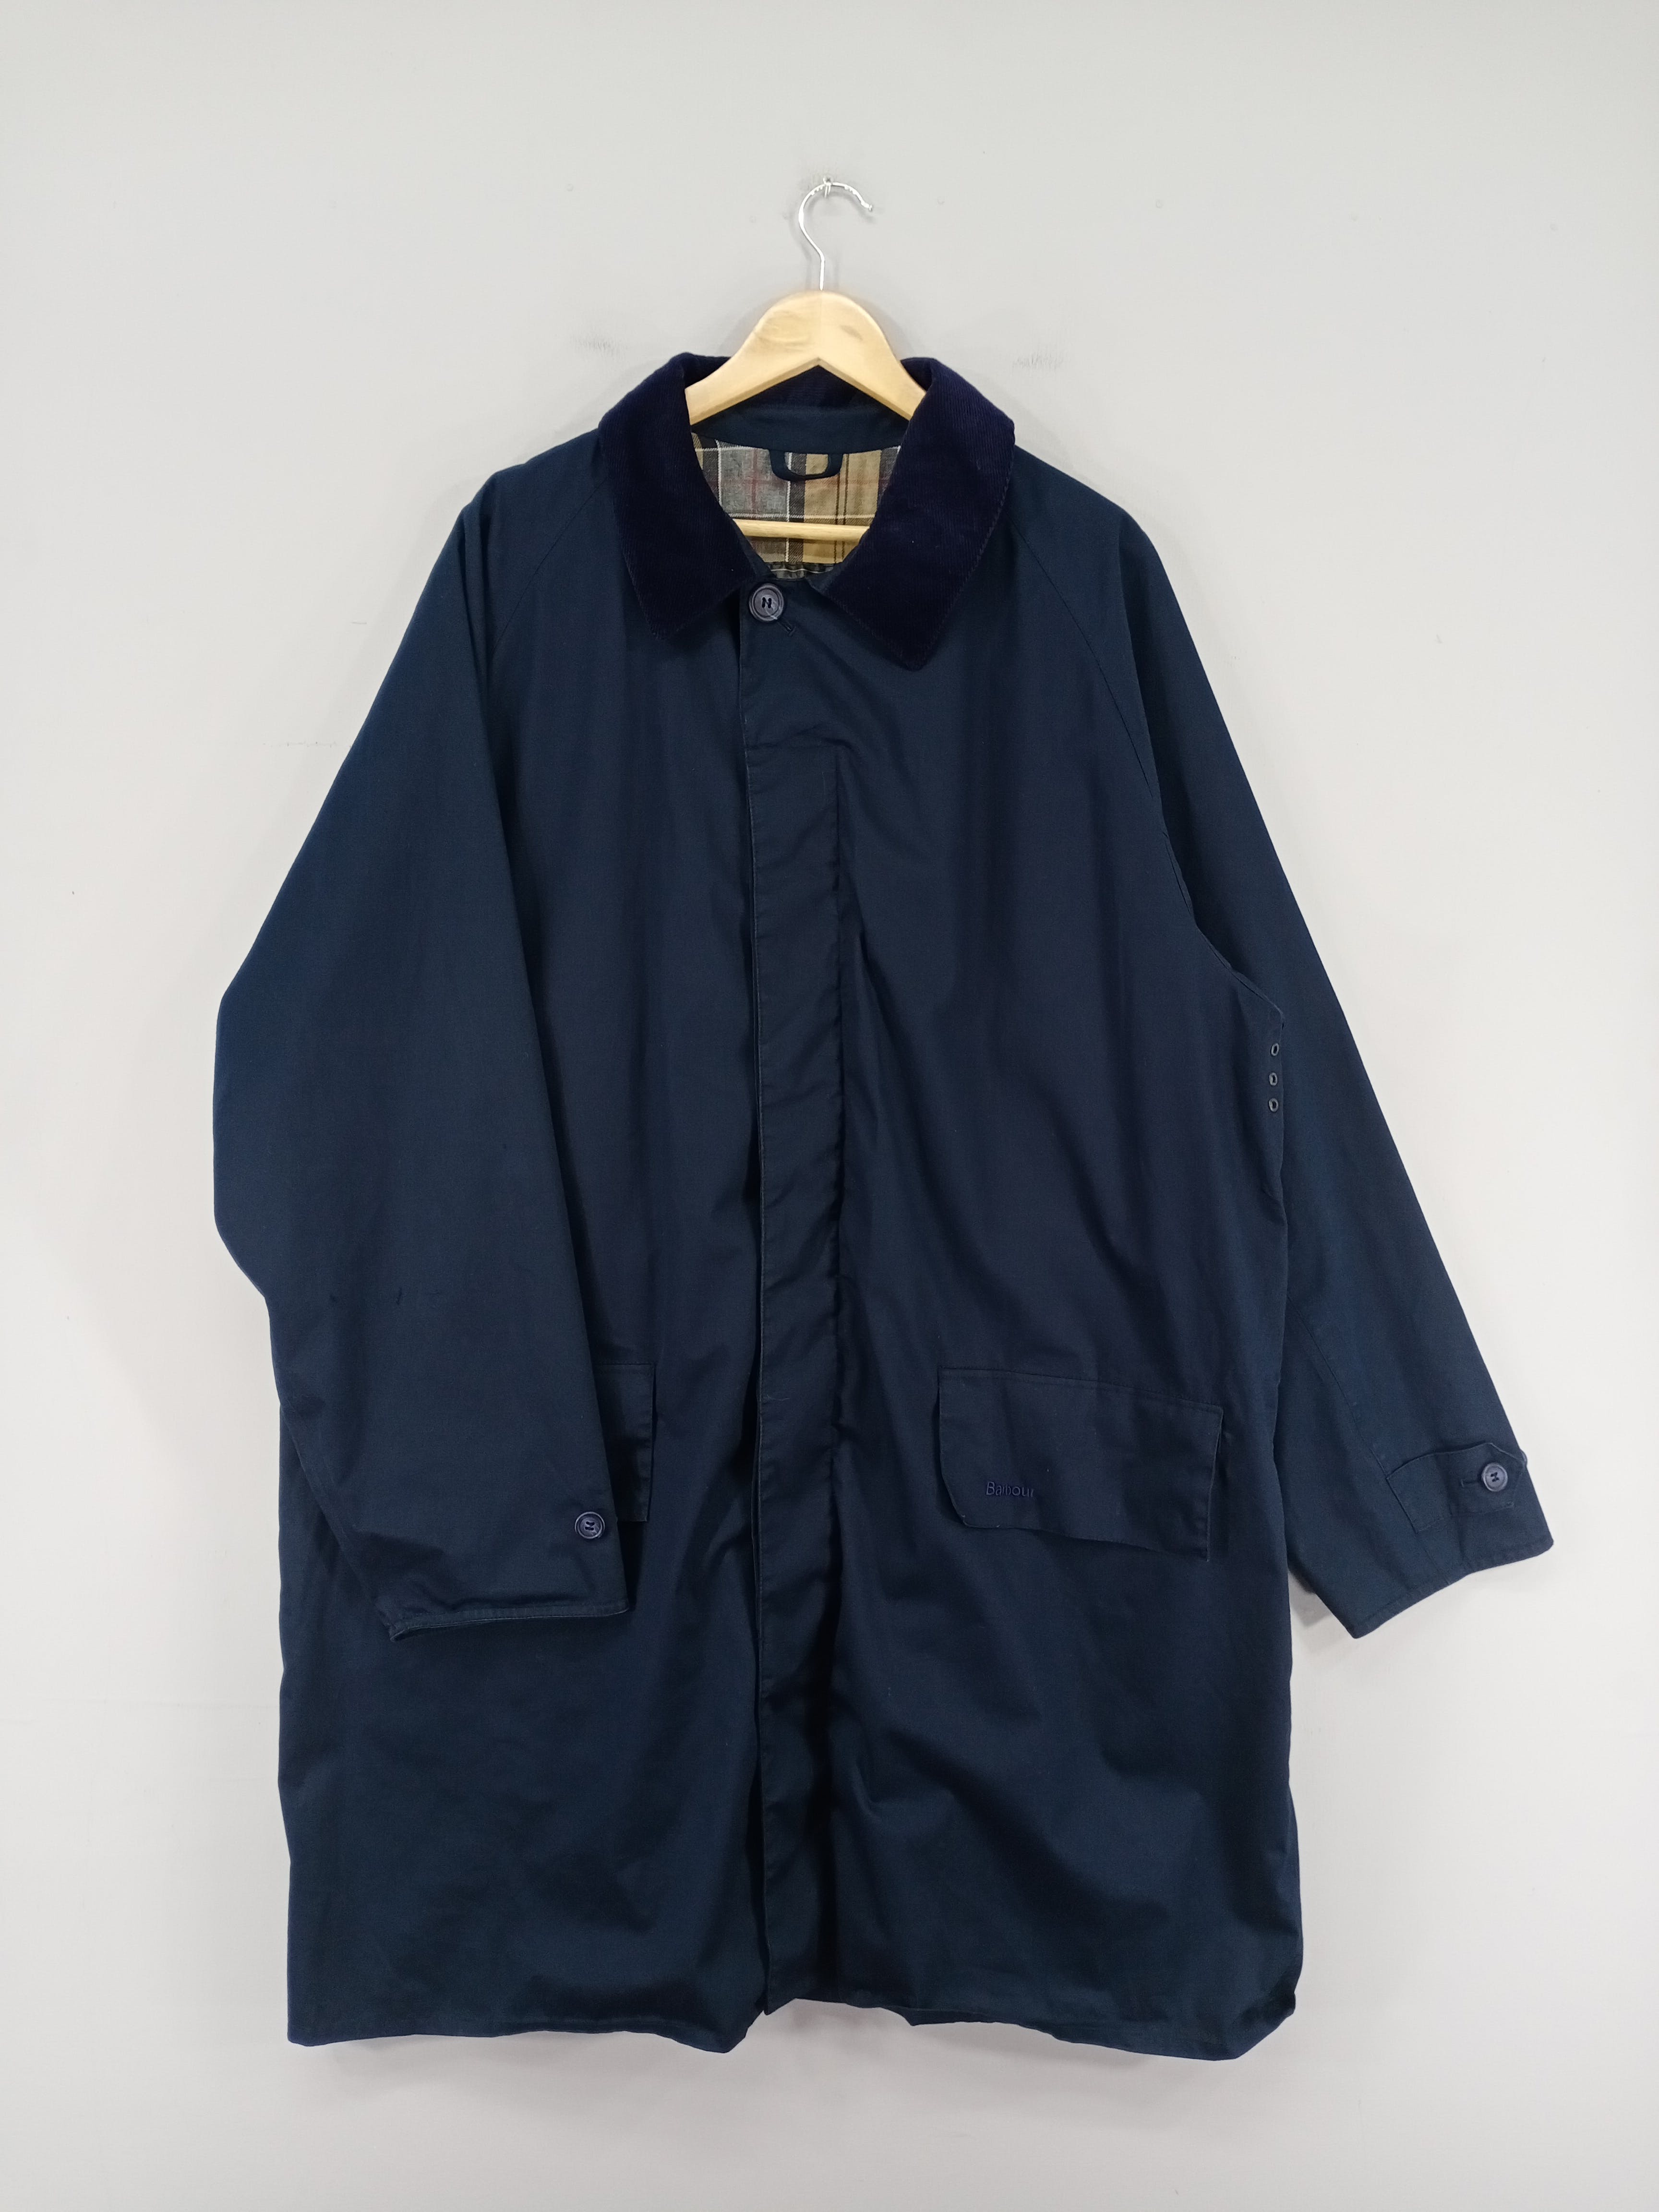 💥RARE💥Vintage Barbour Lightweight 3/4 Coat Jacket - 1